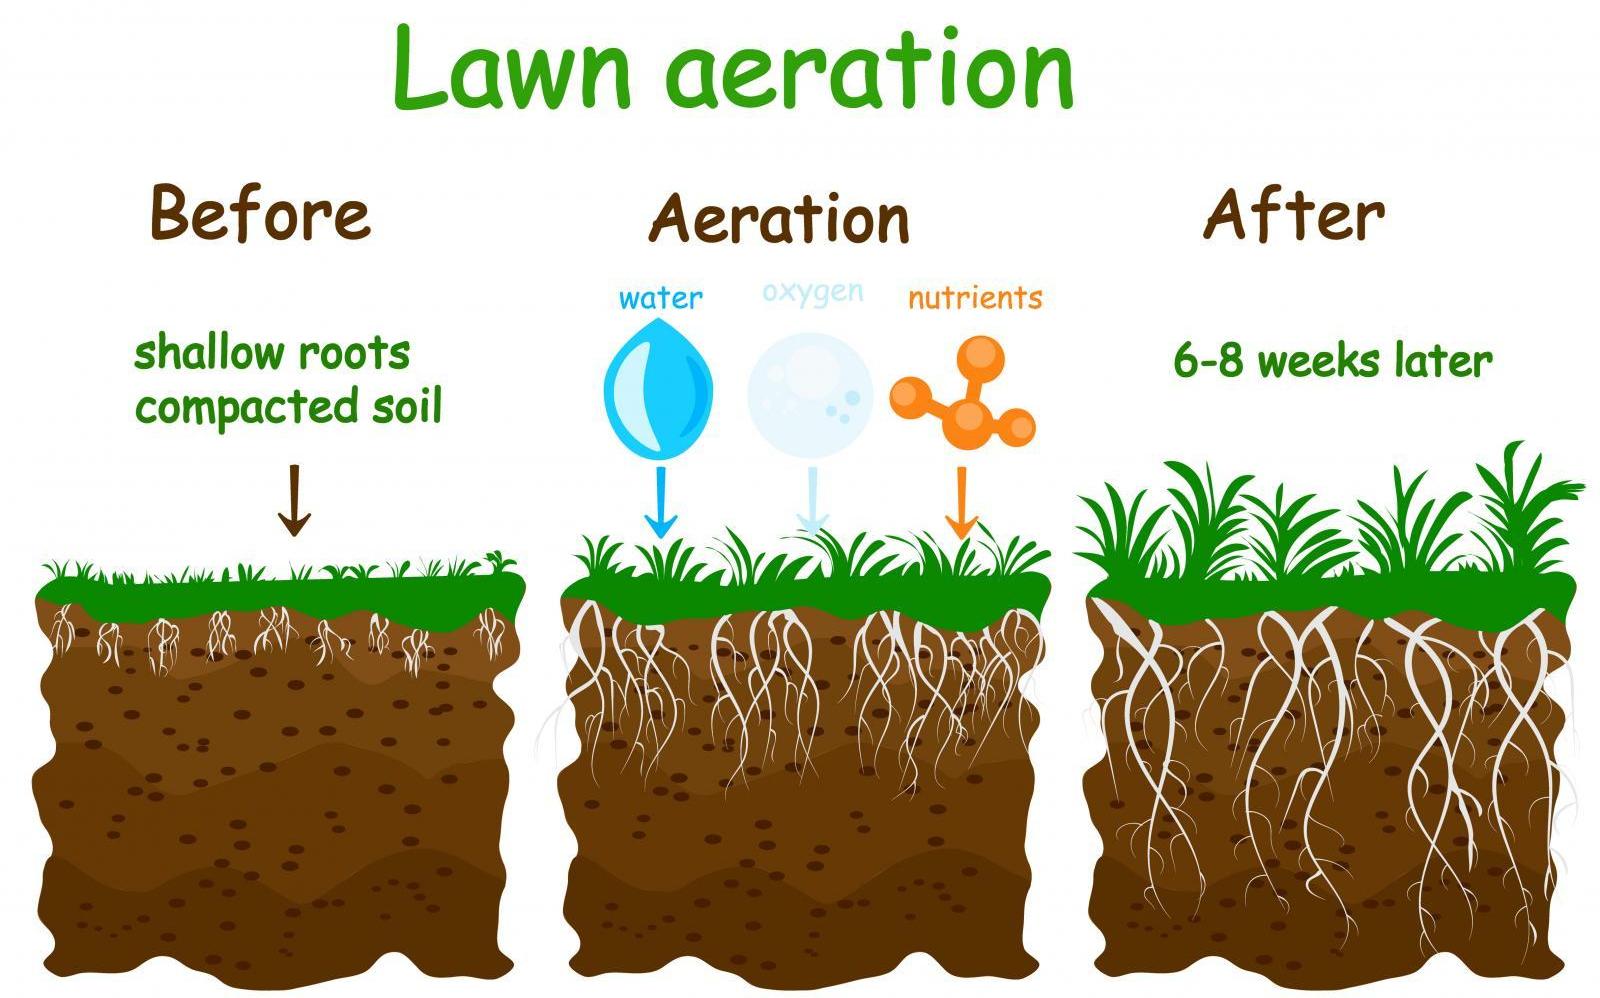 Lawn Aeration